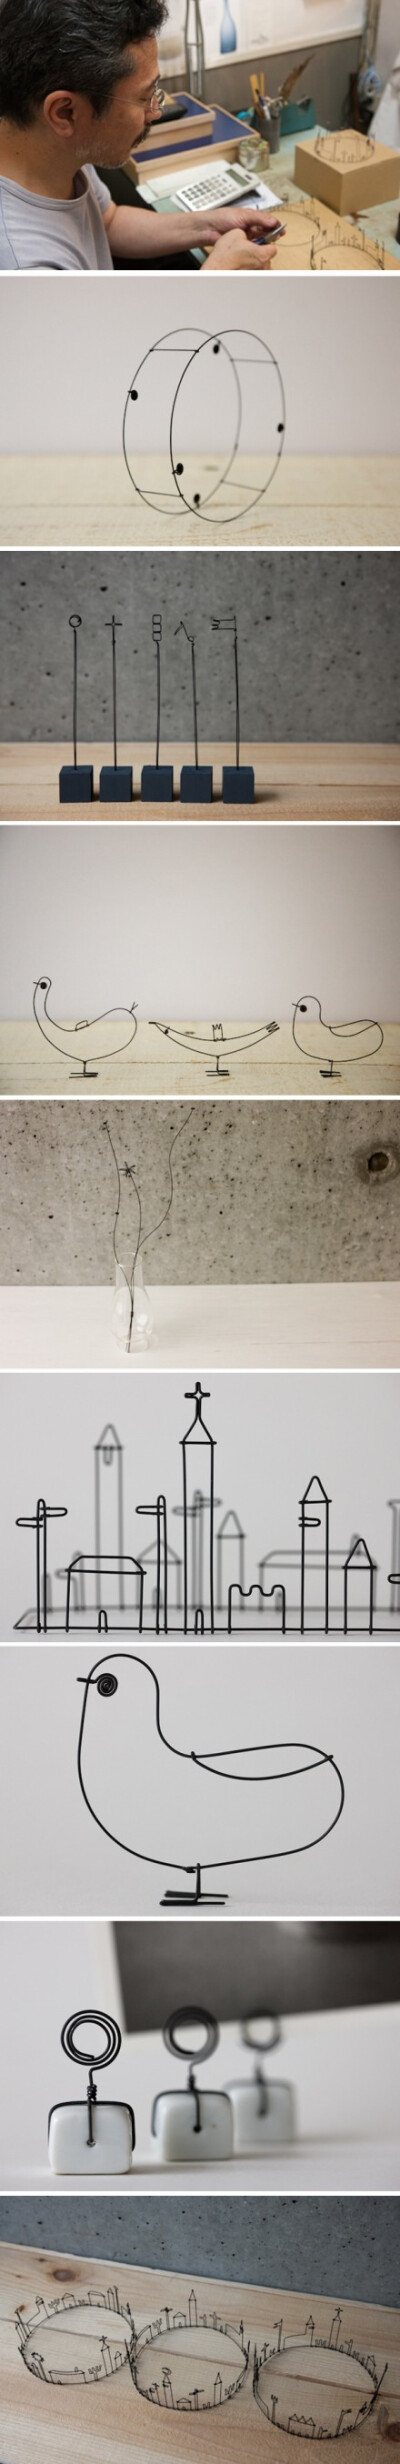 艺术家Masao Seki用不起眼的细铁丝制作的微型雕塑Wire Works，并且丝毫看不出来铁丝原本的冰冷与硬朗。在MASAO SEKI的眼里坚硬可这样被柔美取代，冰冷可如此被安静替换。铁丝可以创造温柔而细腻的世界开出幸福的花。